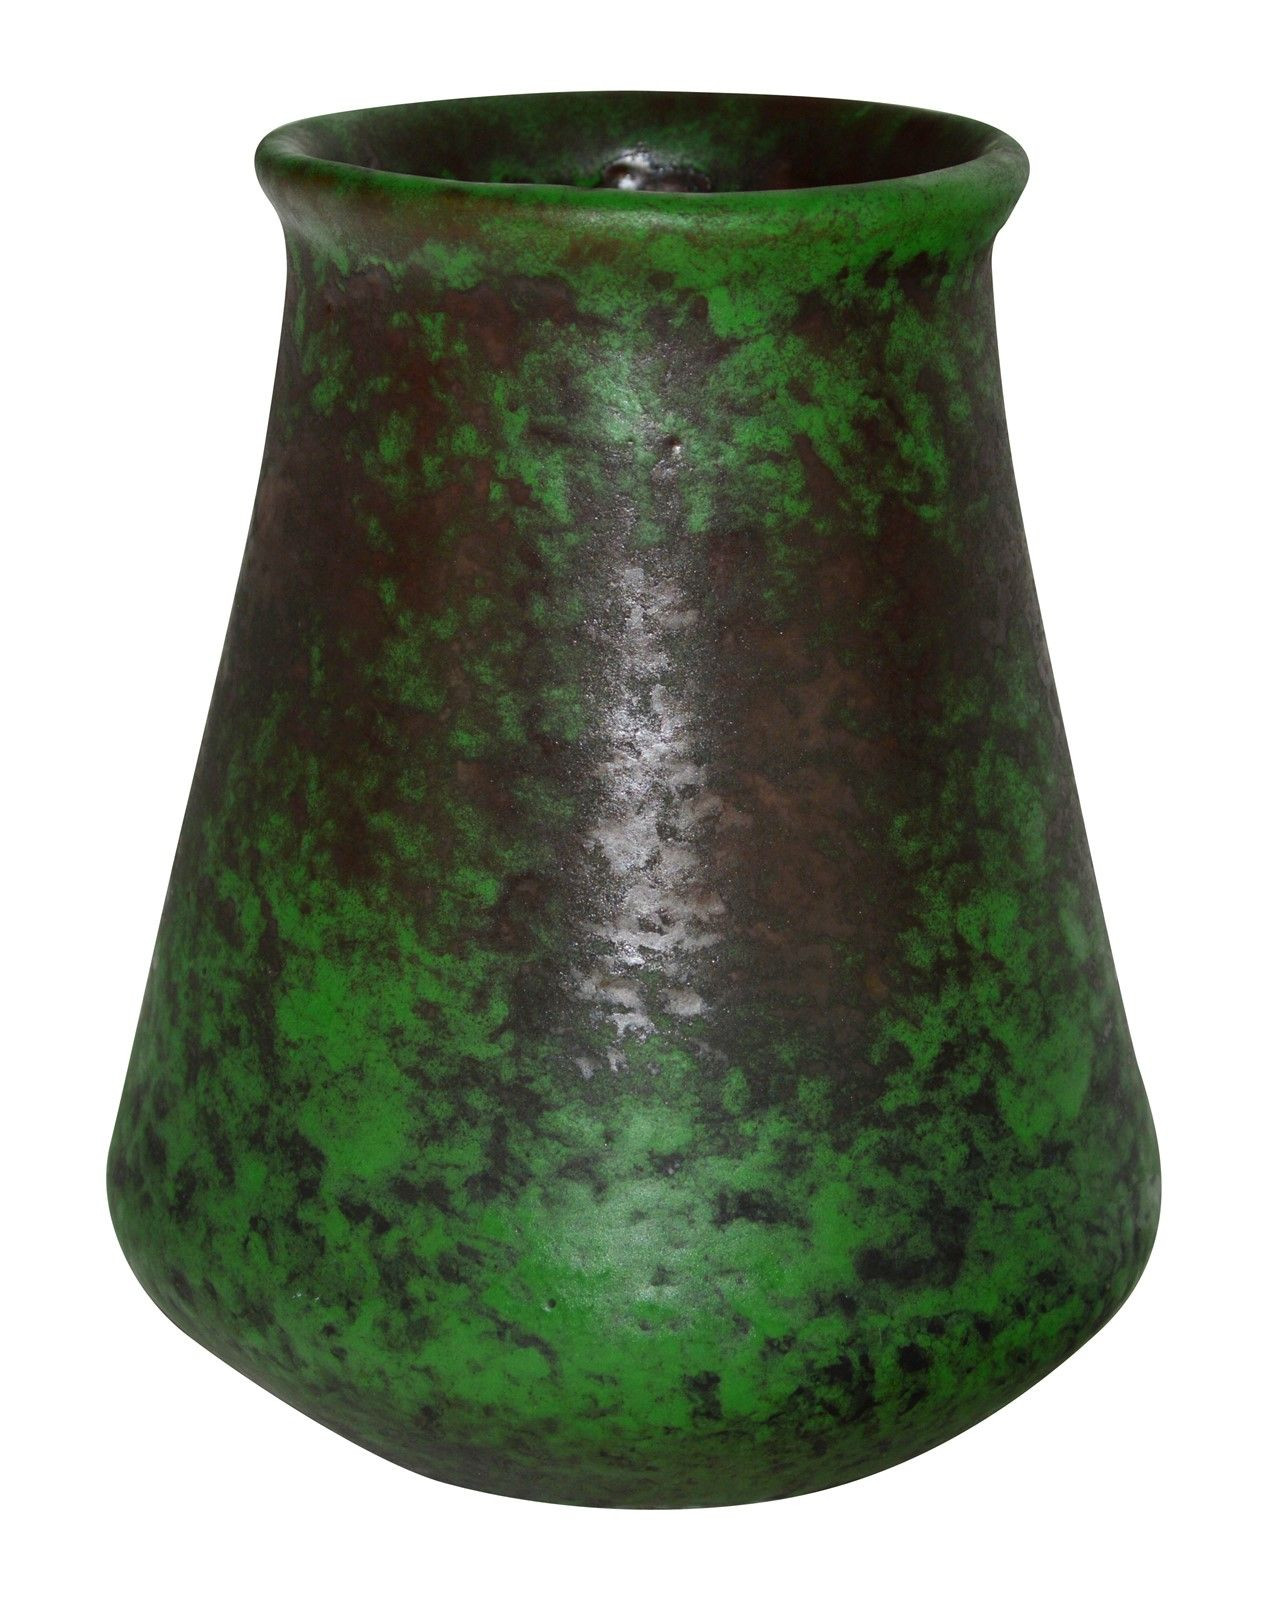 25 Stunning Matte Green Vase 2023 free download matte green vase of weller pottery coppertone bulbous base vase odds and ends regarding weller pottery coppertone bulbous base vase